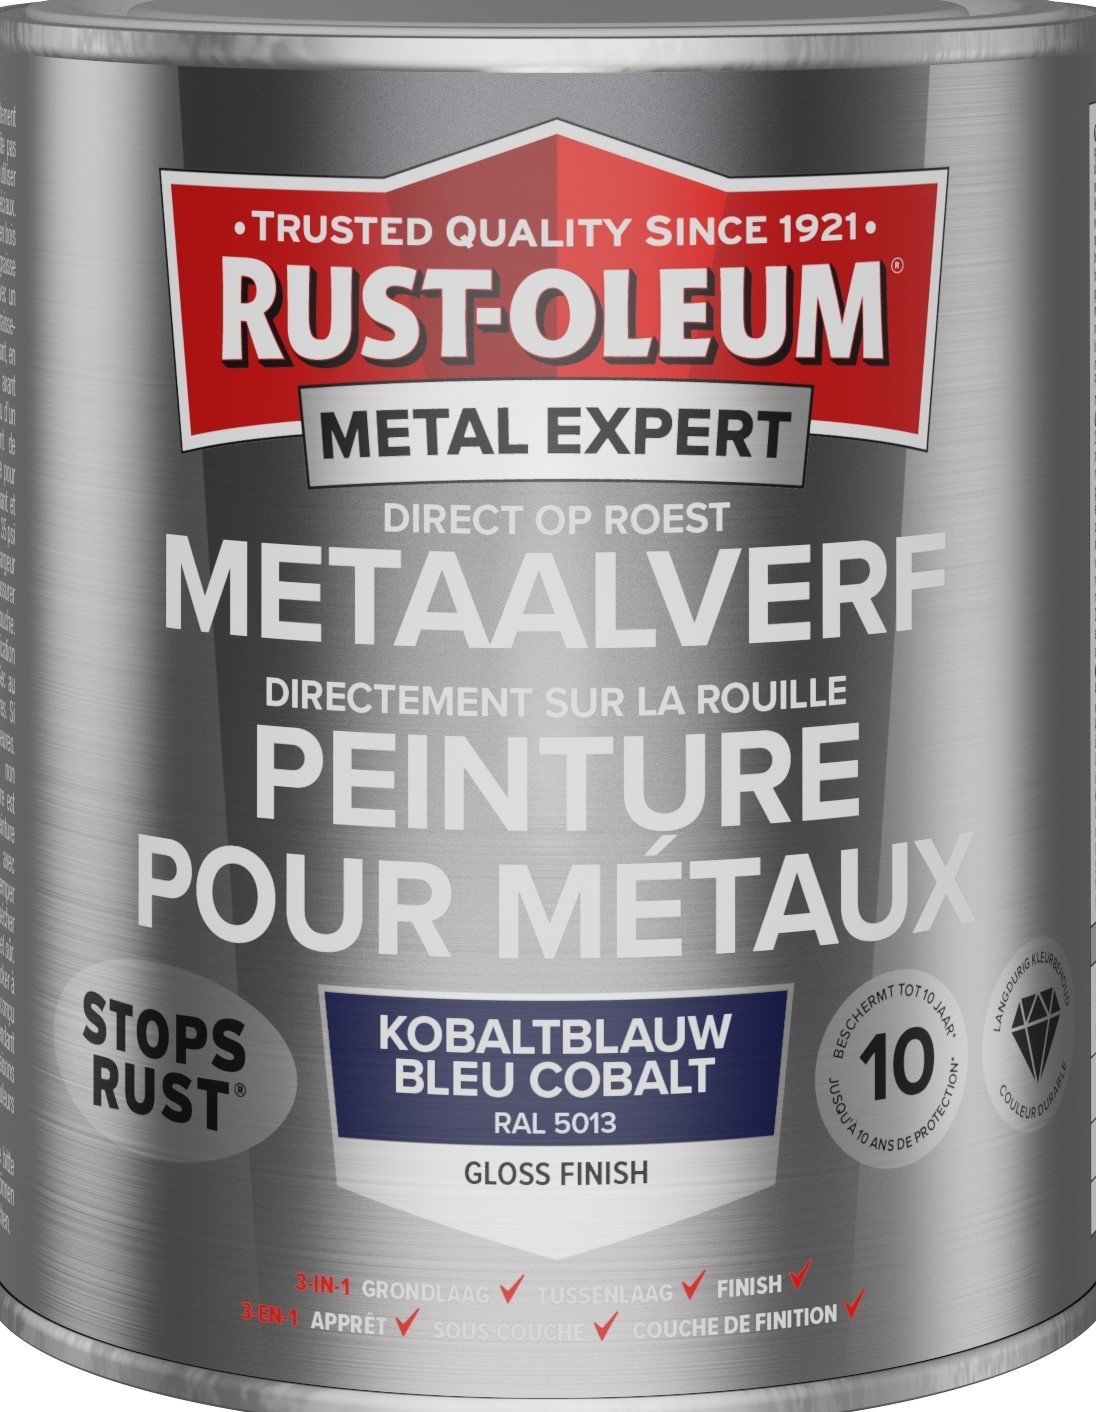 rust-oleum metal expert metaalverf gloss ral 5013 0.75 ltr